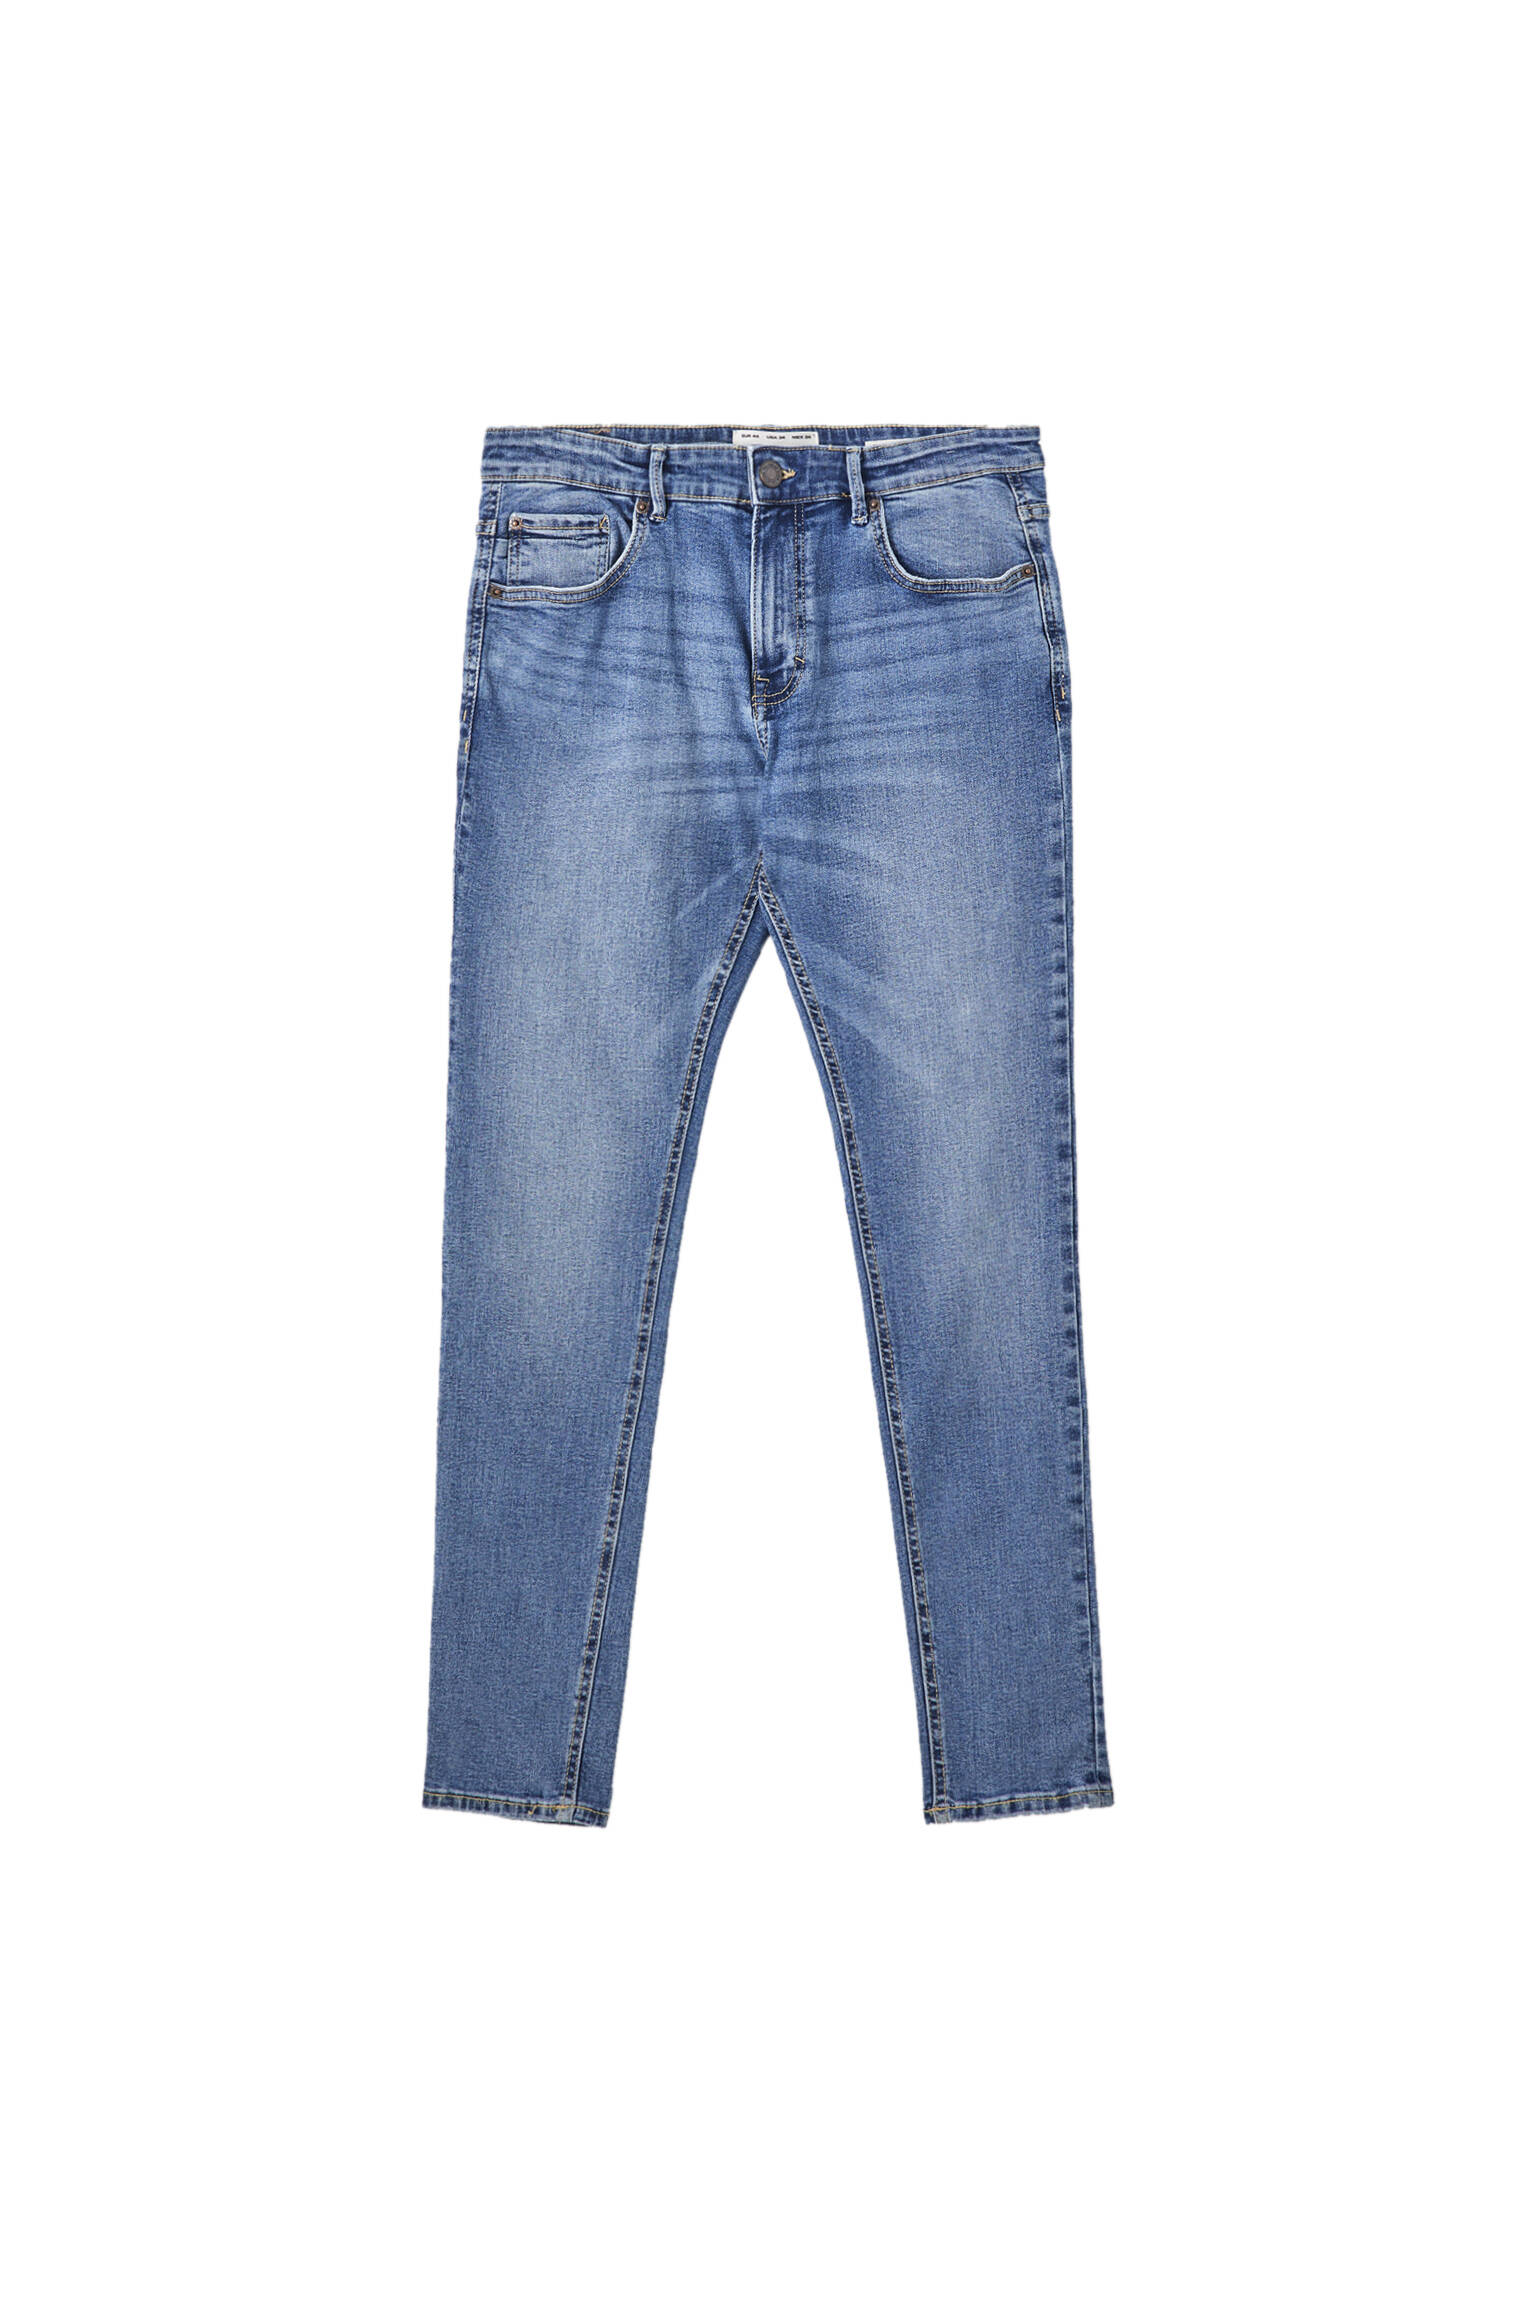 Синие джинсы суперскинни с эффектом потертости ВЫЦВЕТШИЙ СИНИЙ Pull & Bear